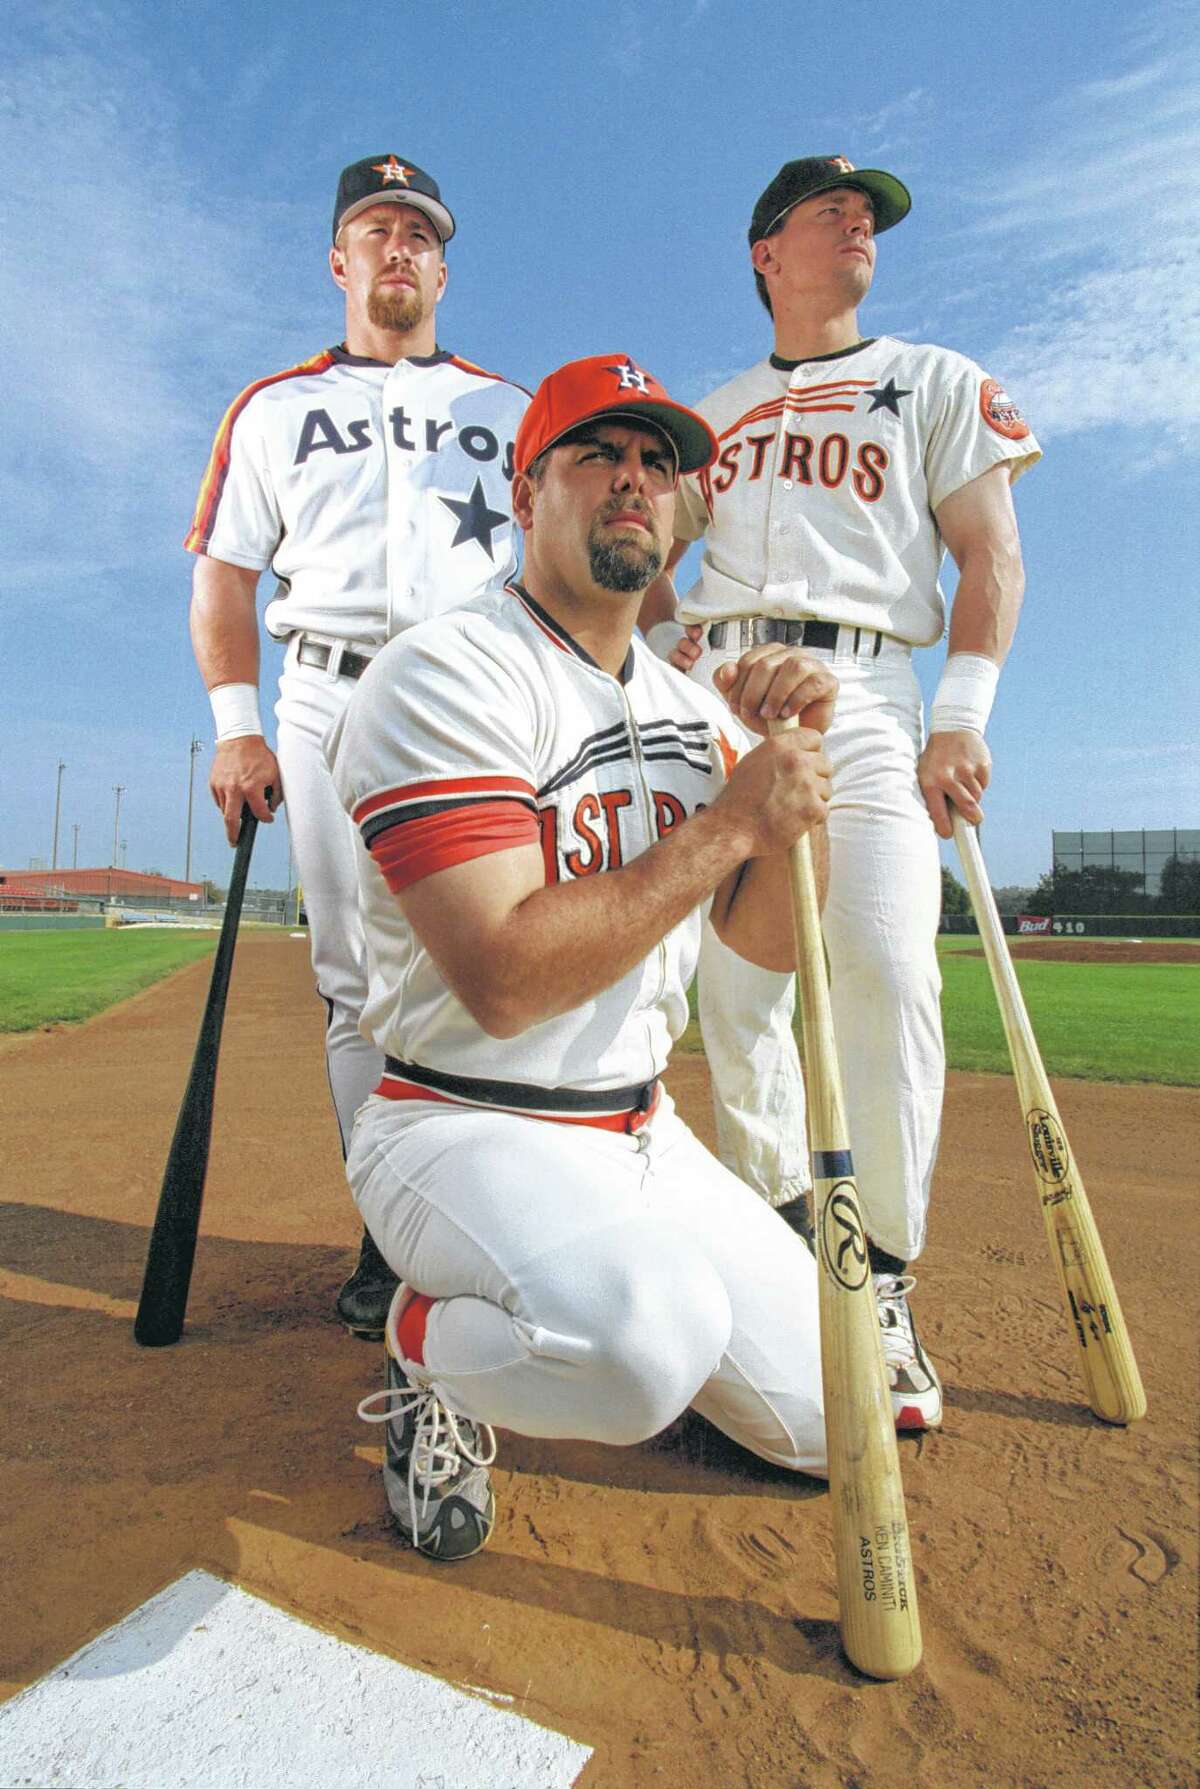 Houston Astros uniforms through history 